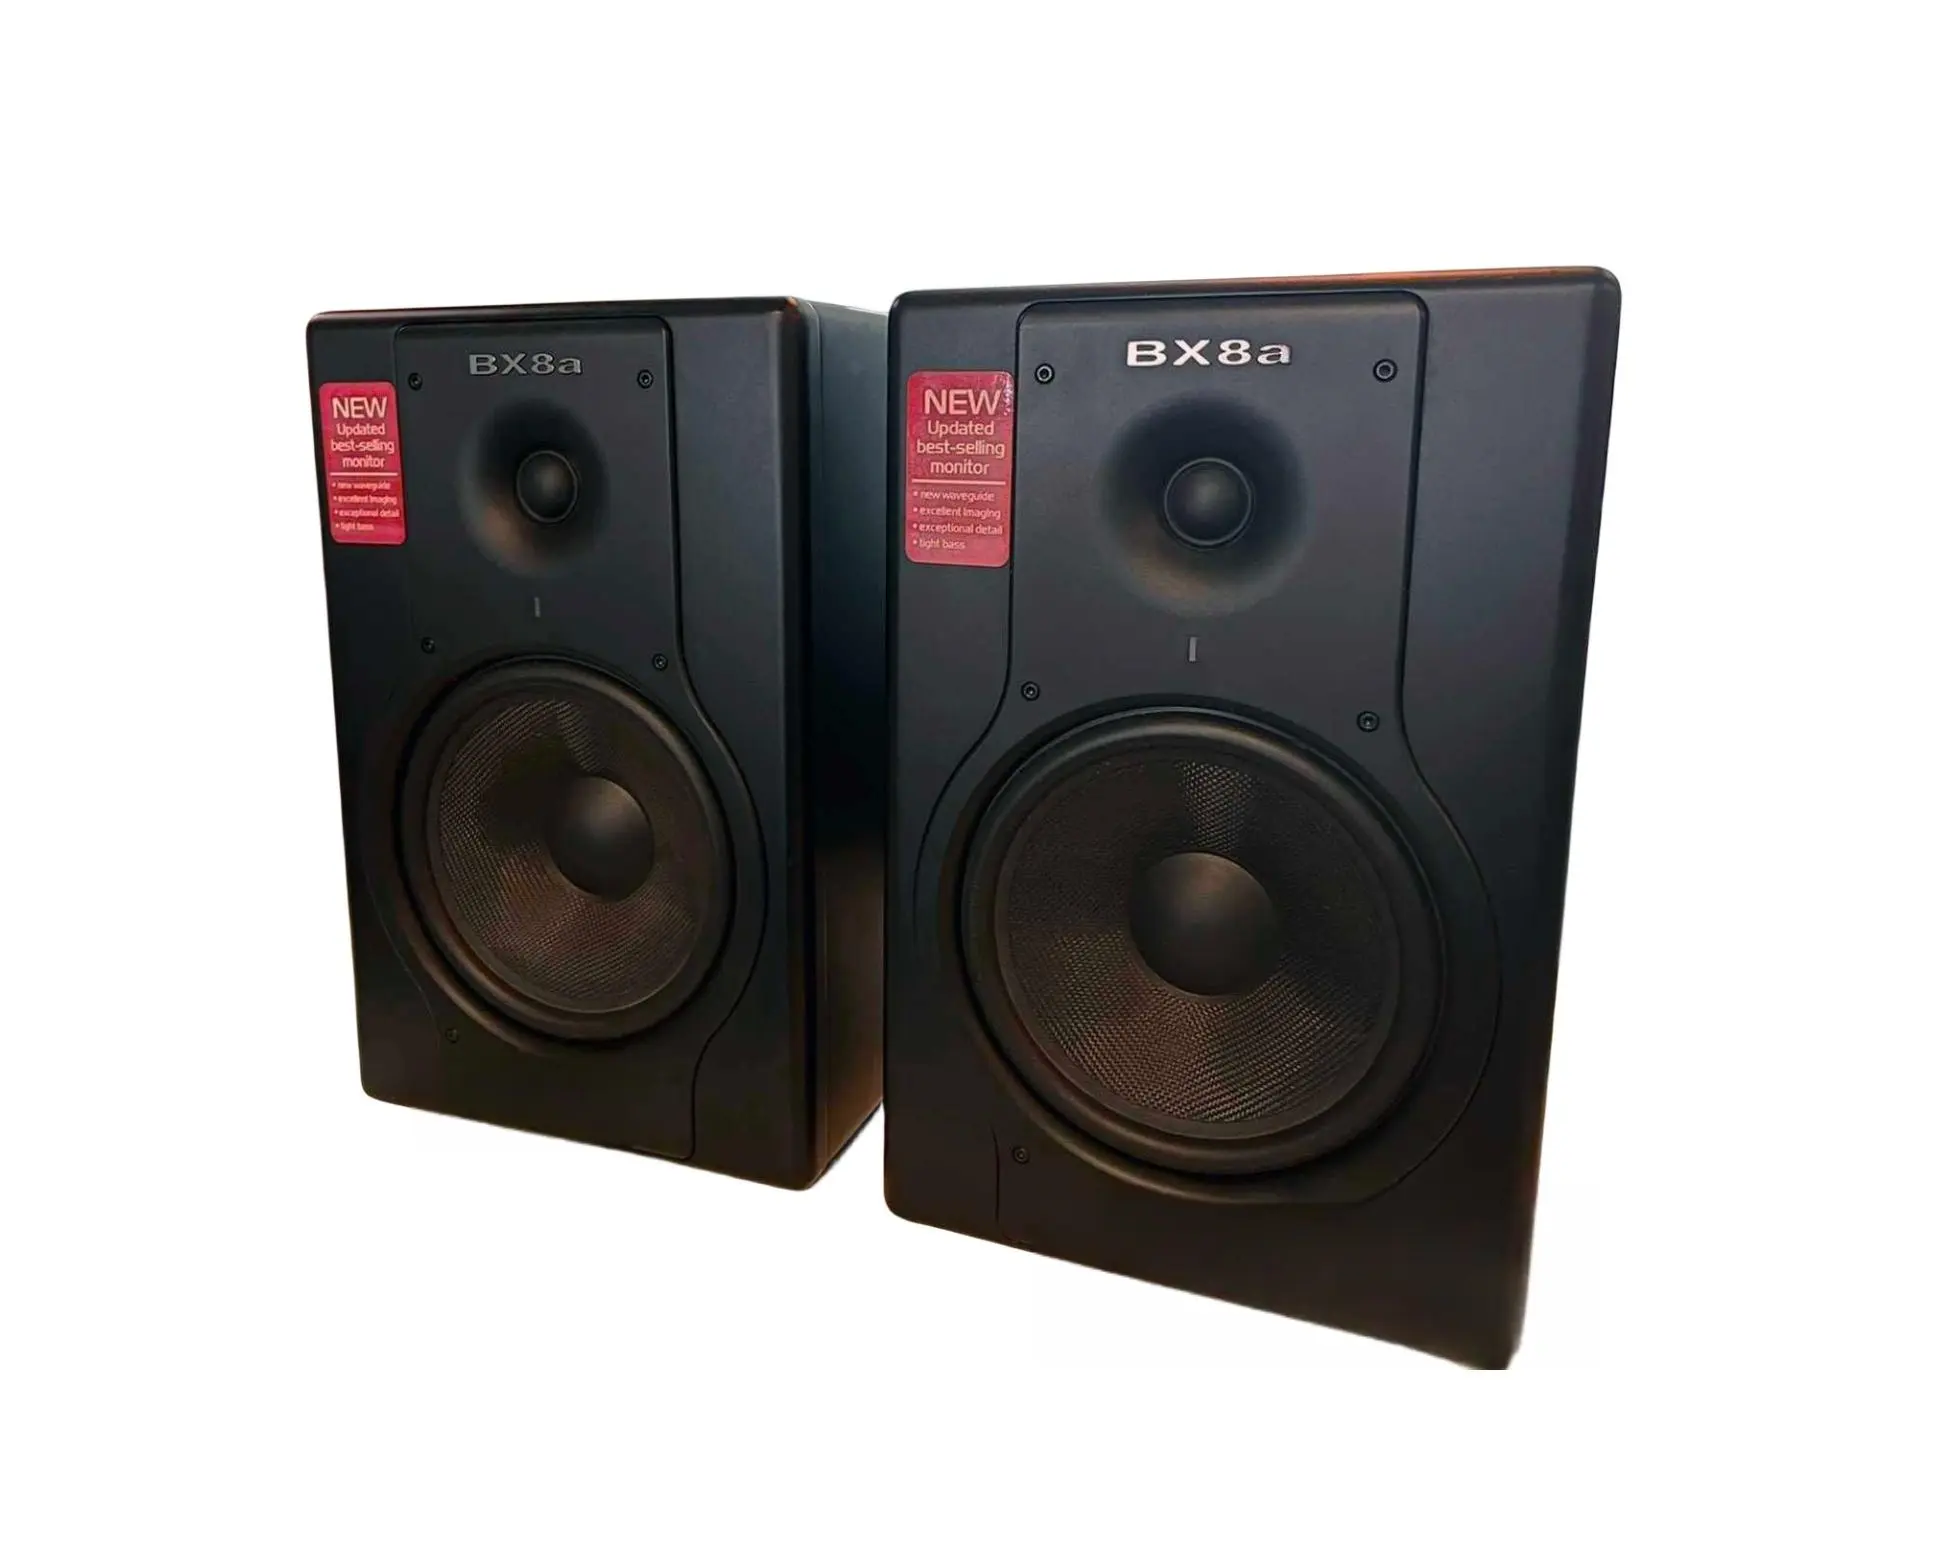 Monitor pengeras suara BX5AD2 kualitas tinggi rentang referensi Studio Monitor DJ bertenaga komputer Audio 5 inci pengeras suara